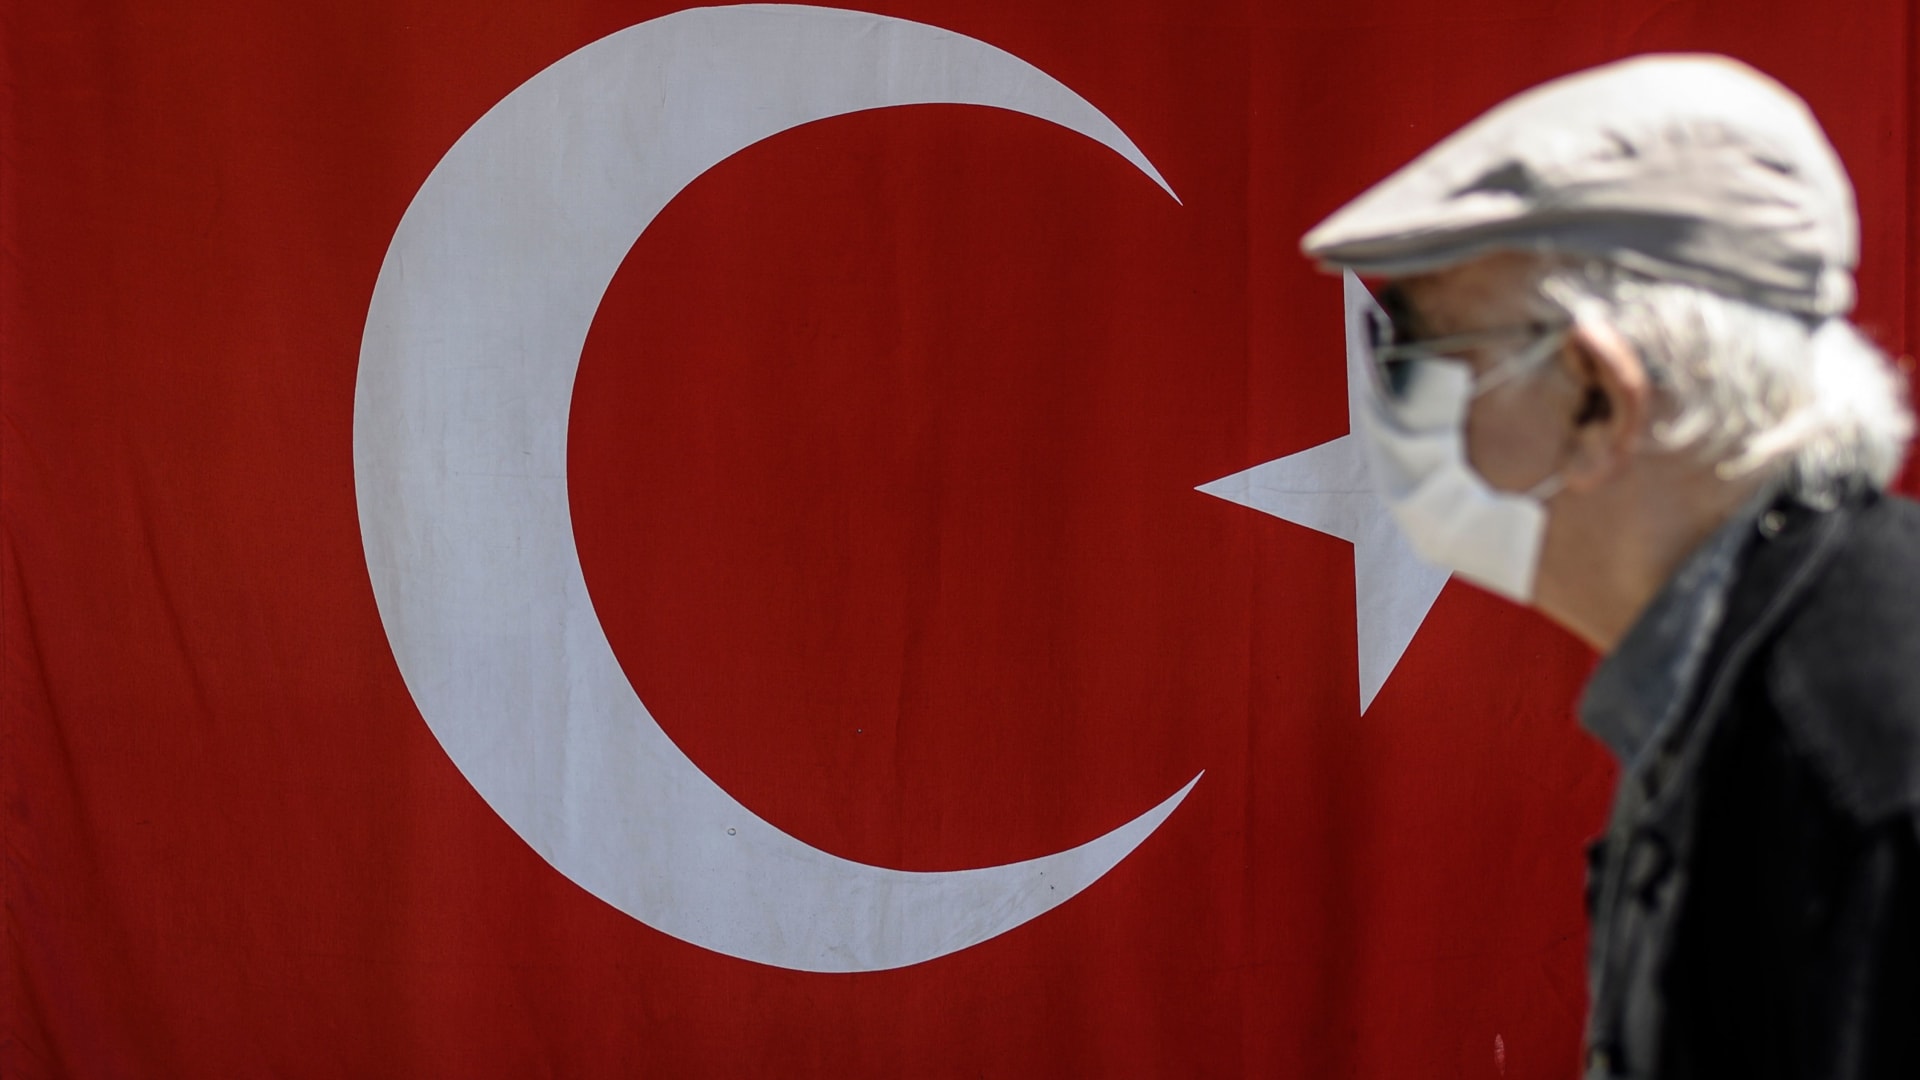 لأول مرة منذ أزمة كورونا.. تركيا تسمح بخروج كبار السن للتنزه